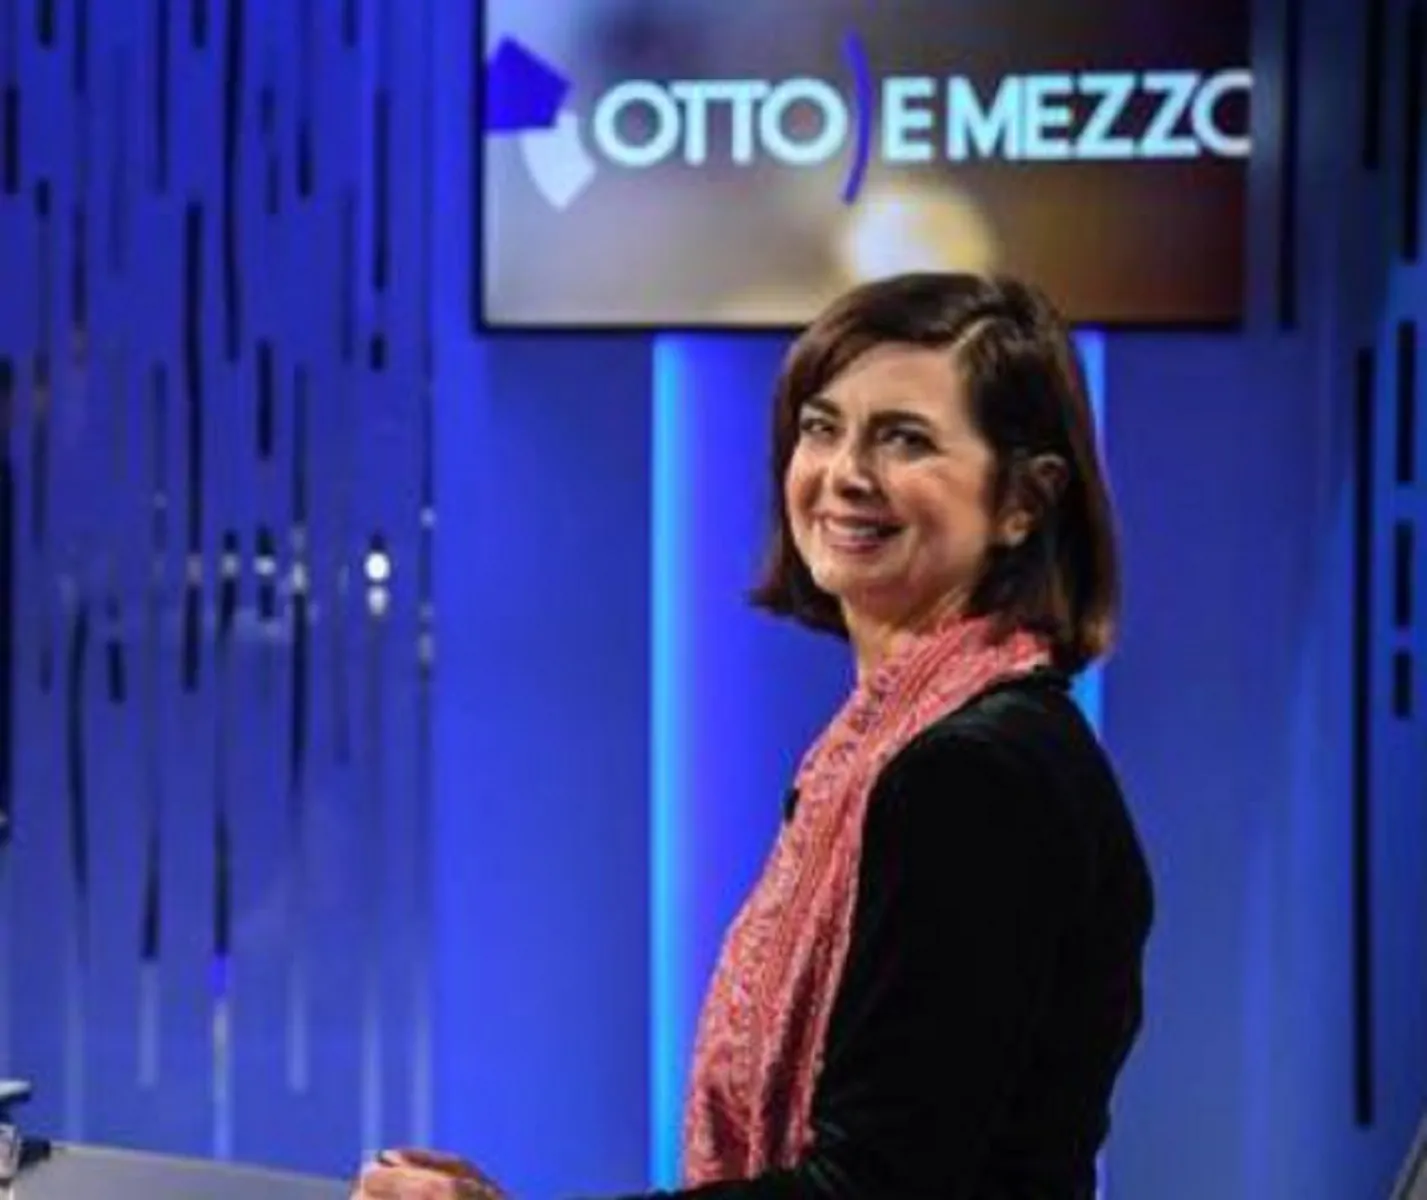 Otto e Mezzo, Boldrini: "Su di me il Giornale ha pubblicato fake news"